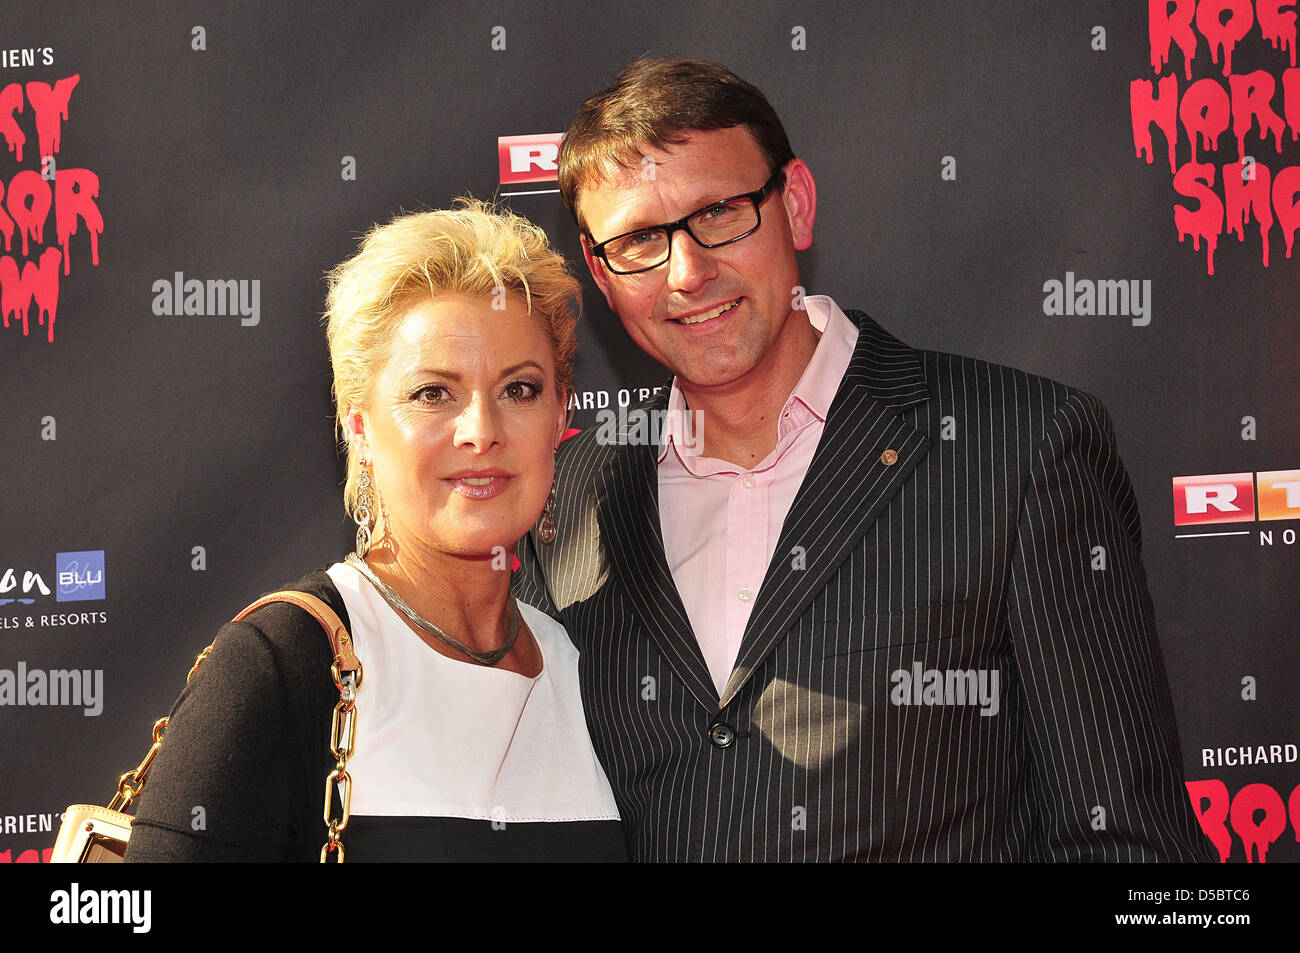 Tanja Schumann, Stefan Burmeister bei der Premiere von das musical "Rocky Horror Show". Hamburg, Deutschland - 27.07.2011. Stockfoto